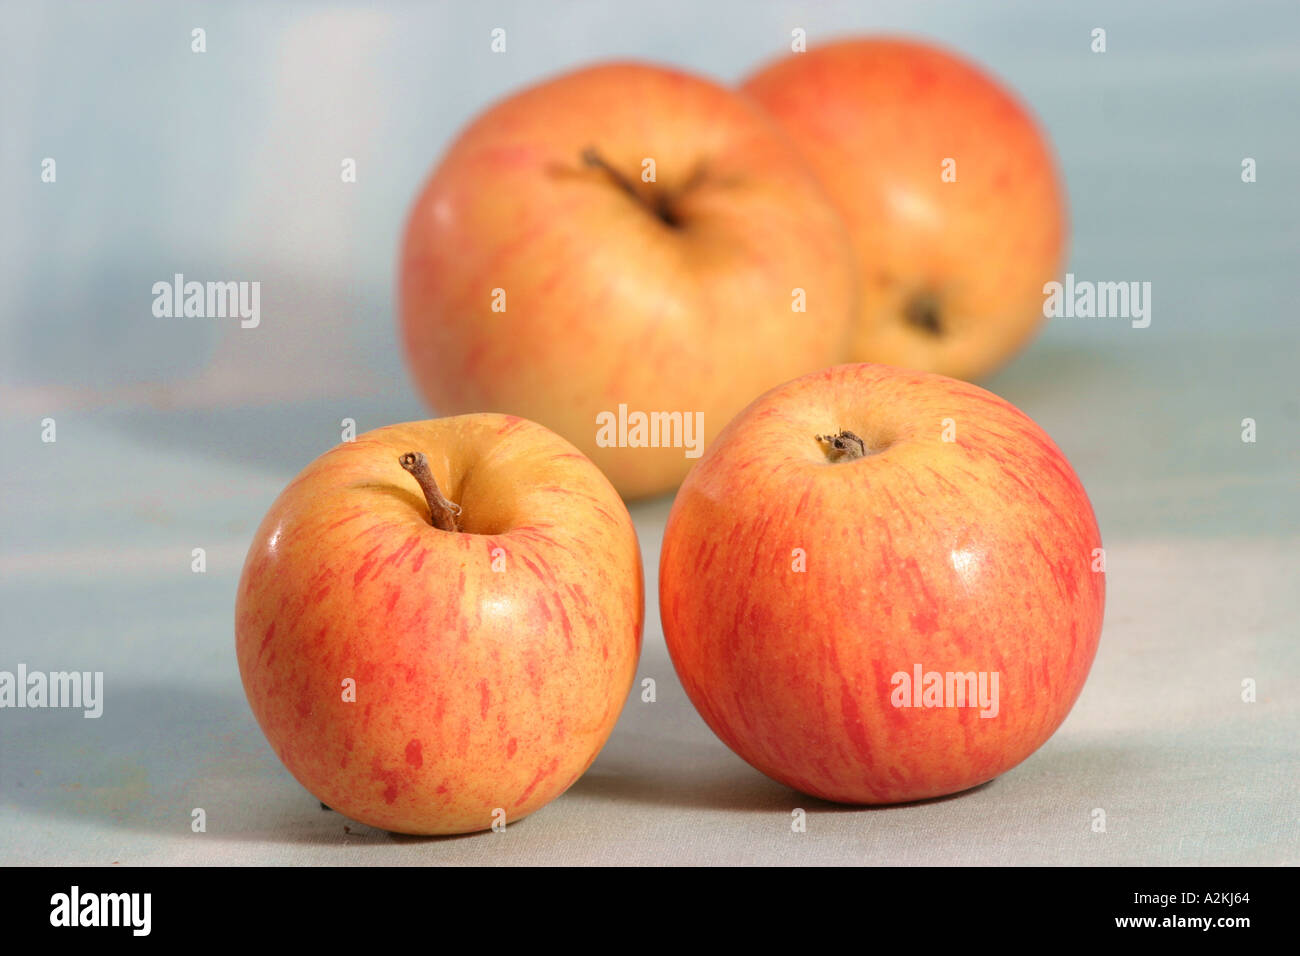 Apple ordina Rheinischer Krumstiel Foto Stock